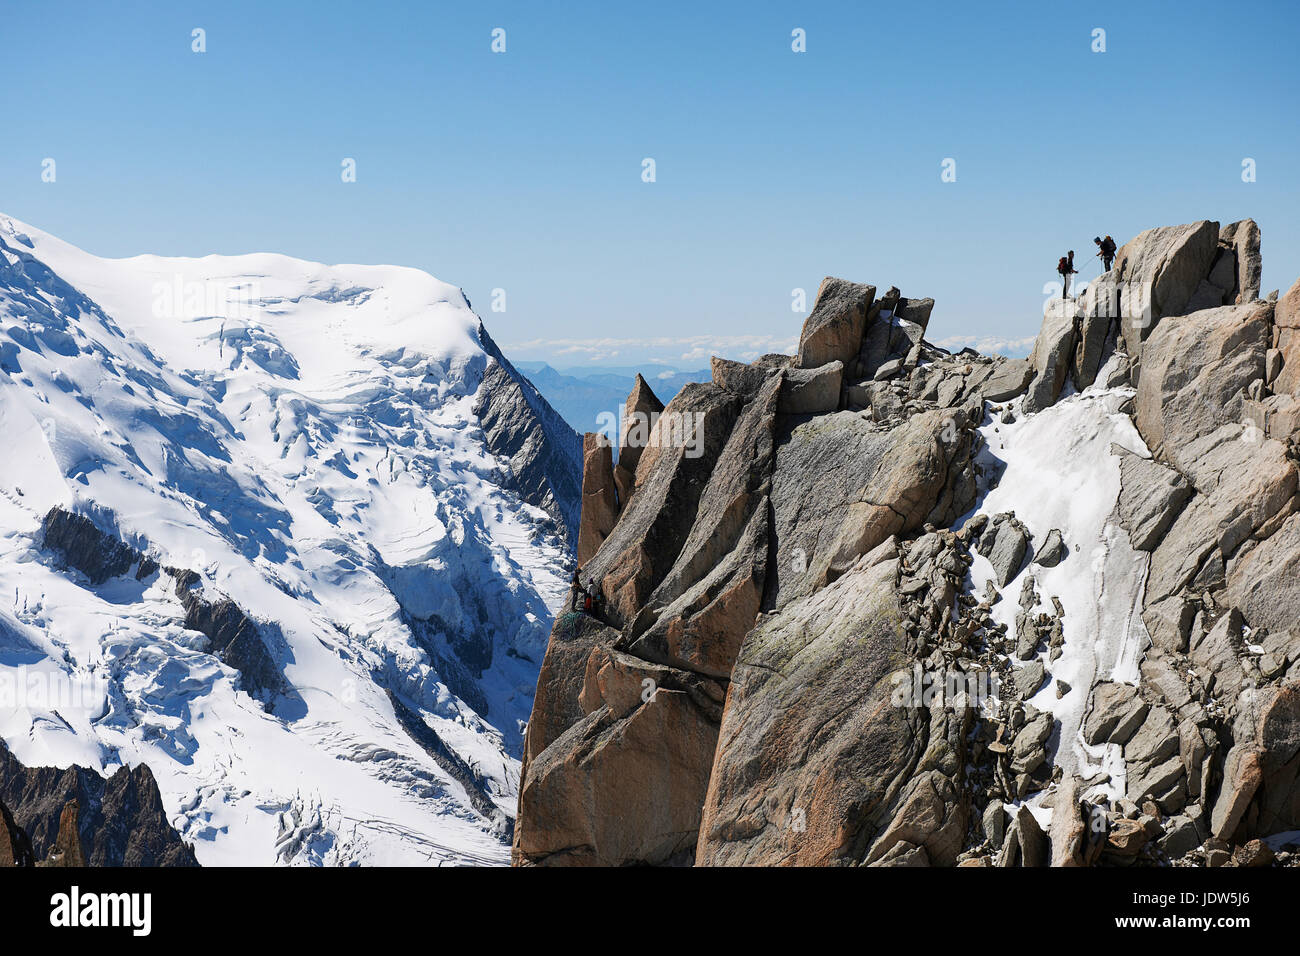 Les alpinistes sur le sommet, Chamonix, Haute Savoie, France Banque D'Images